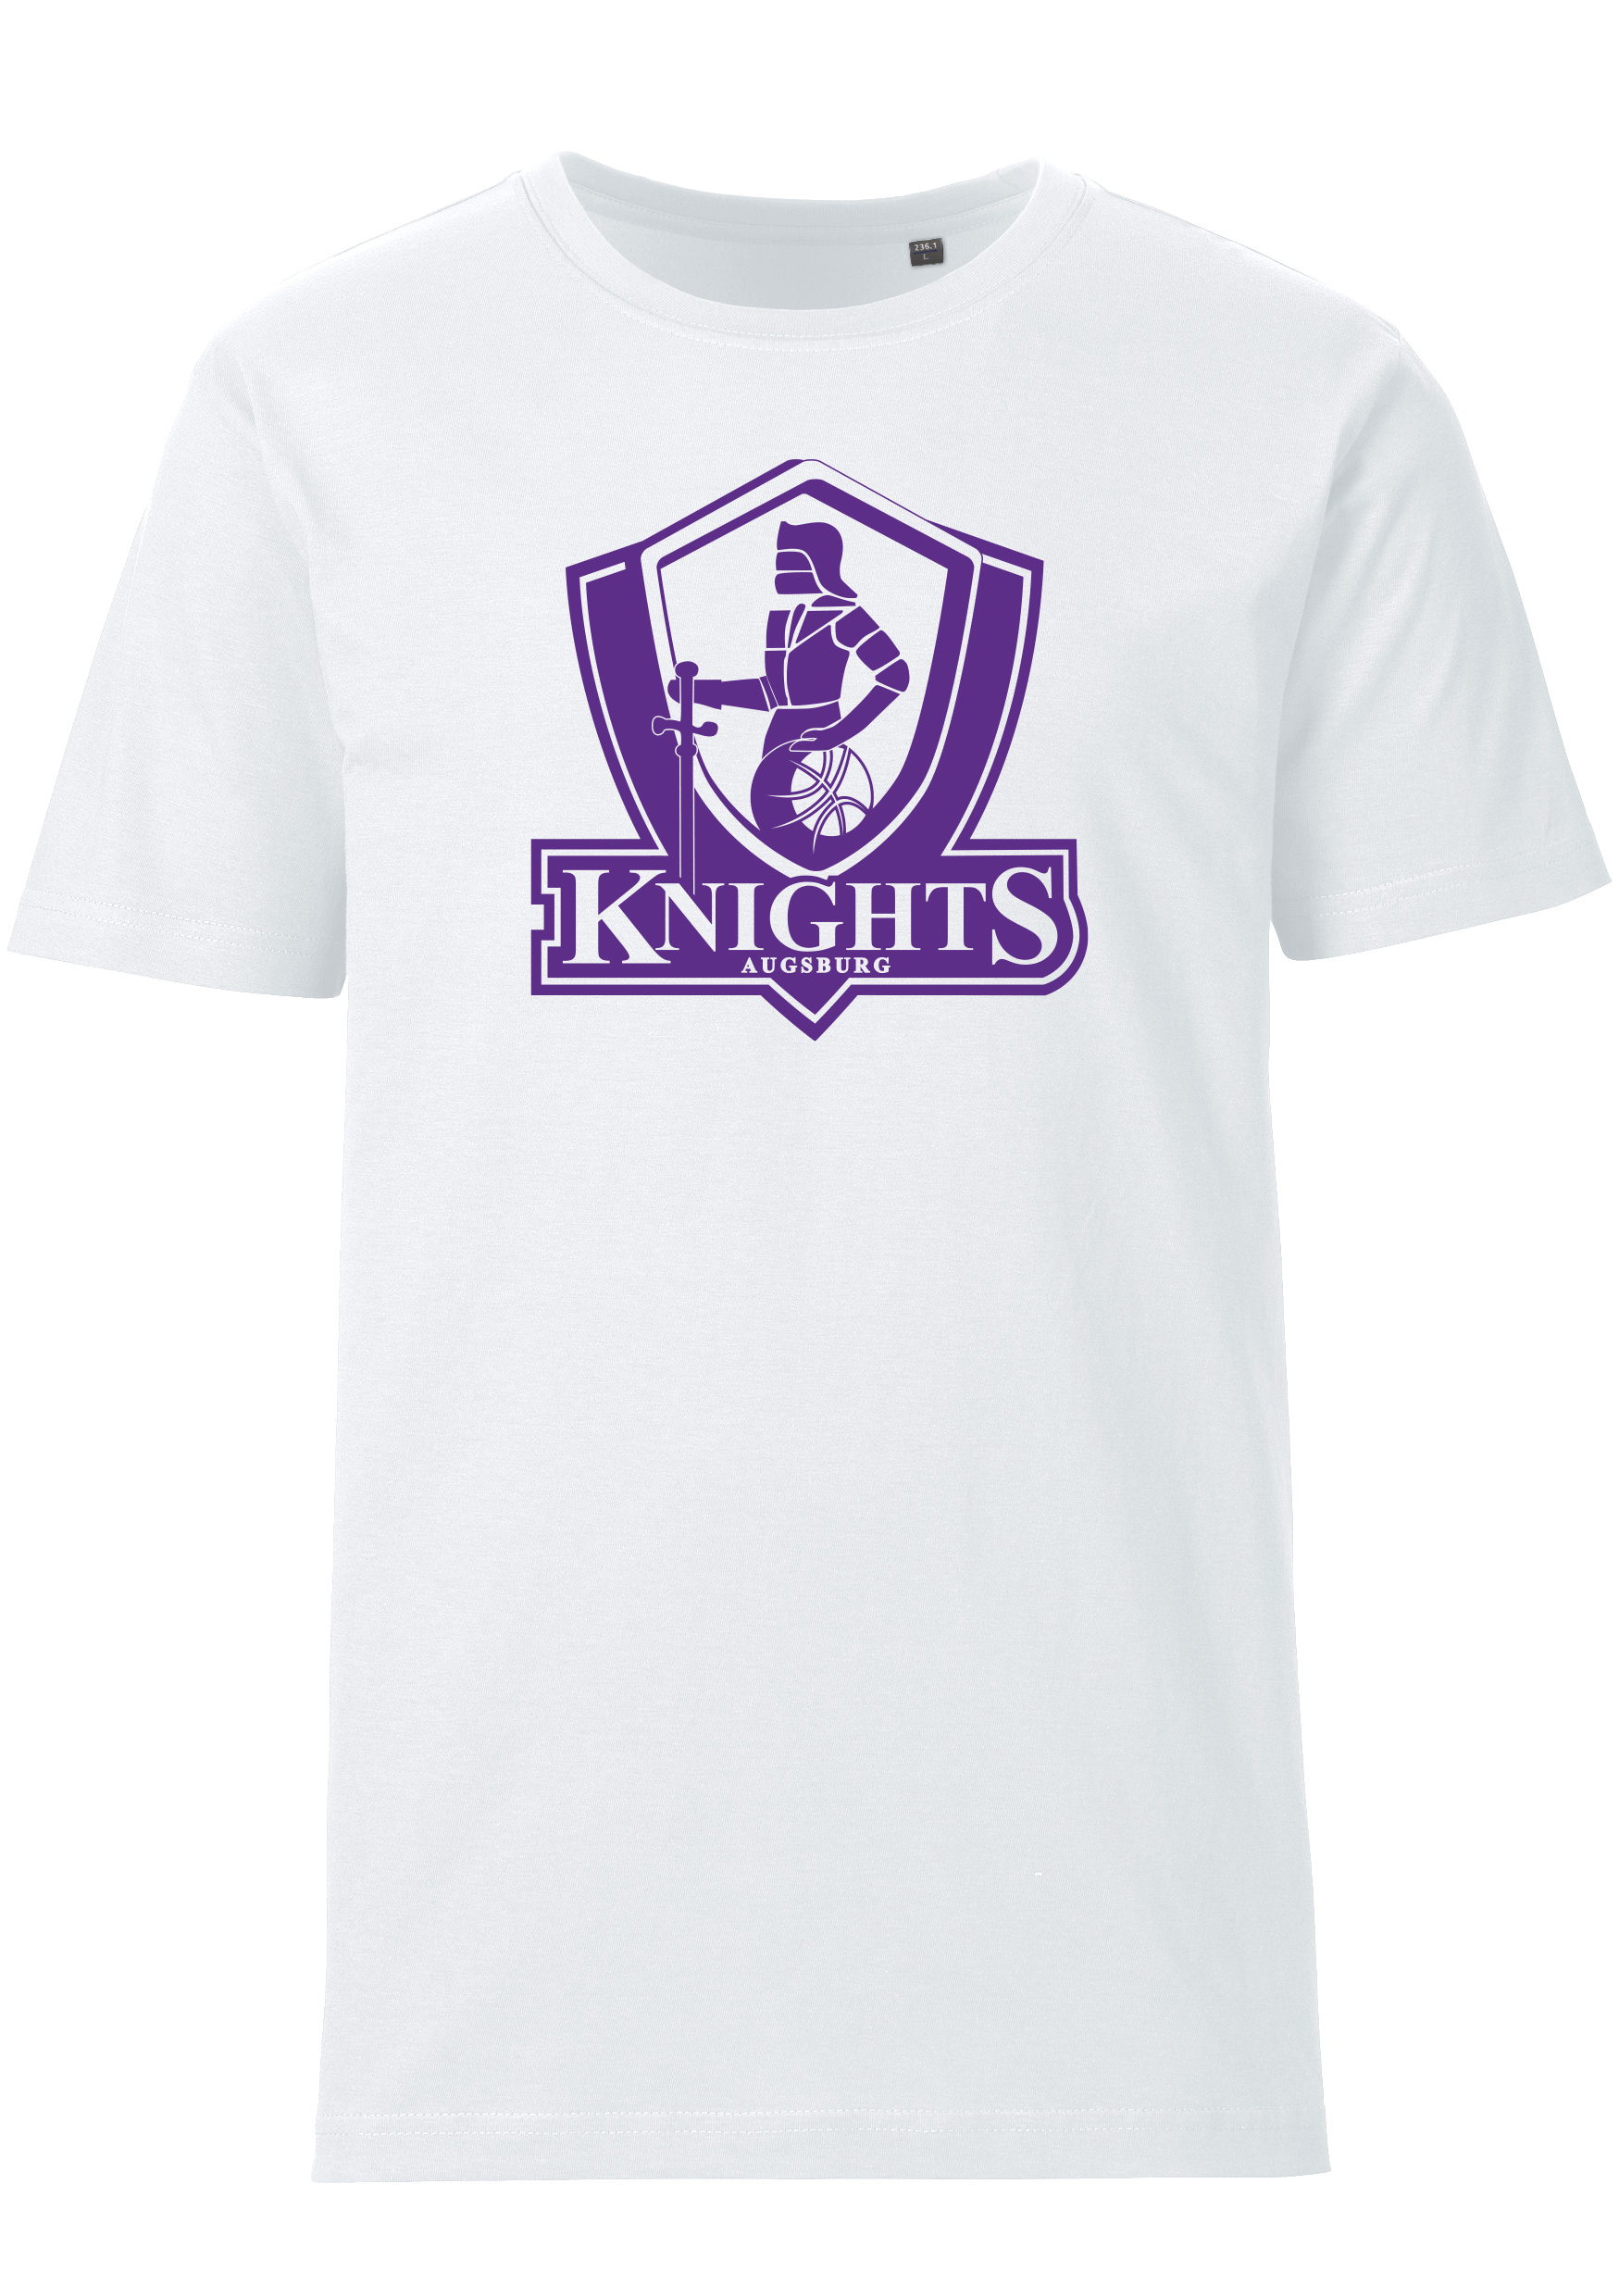 Schwaben Knights T-Shirt mit Namen